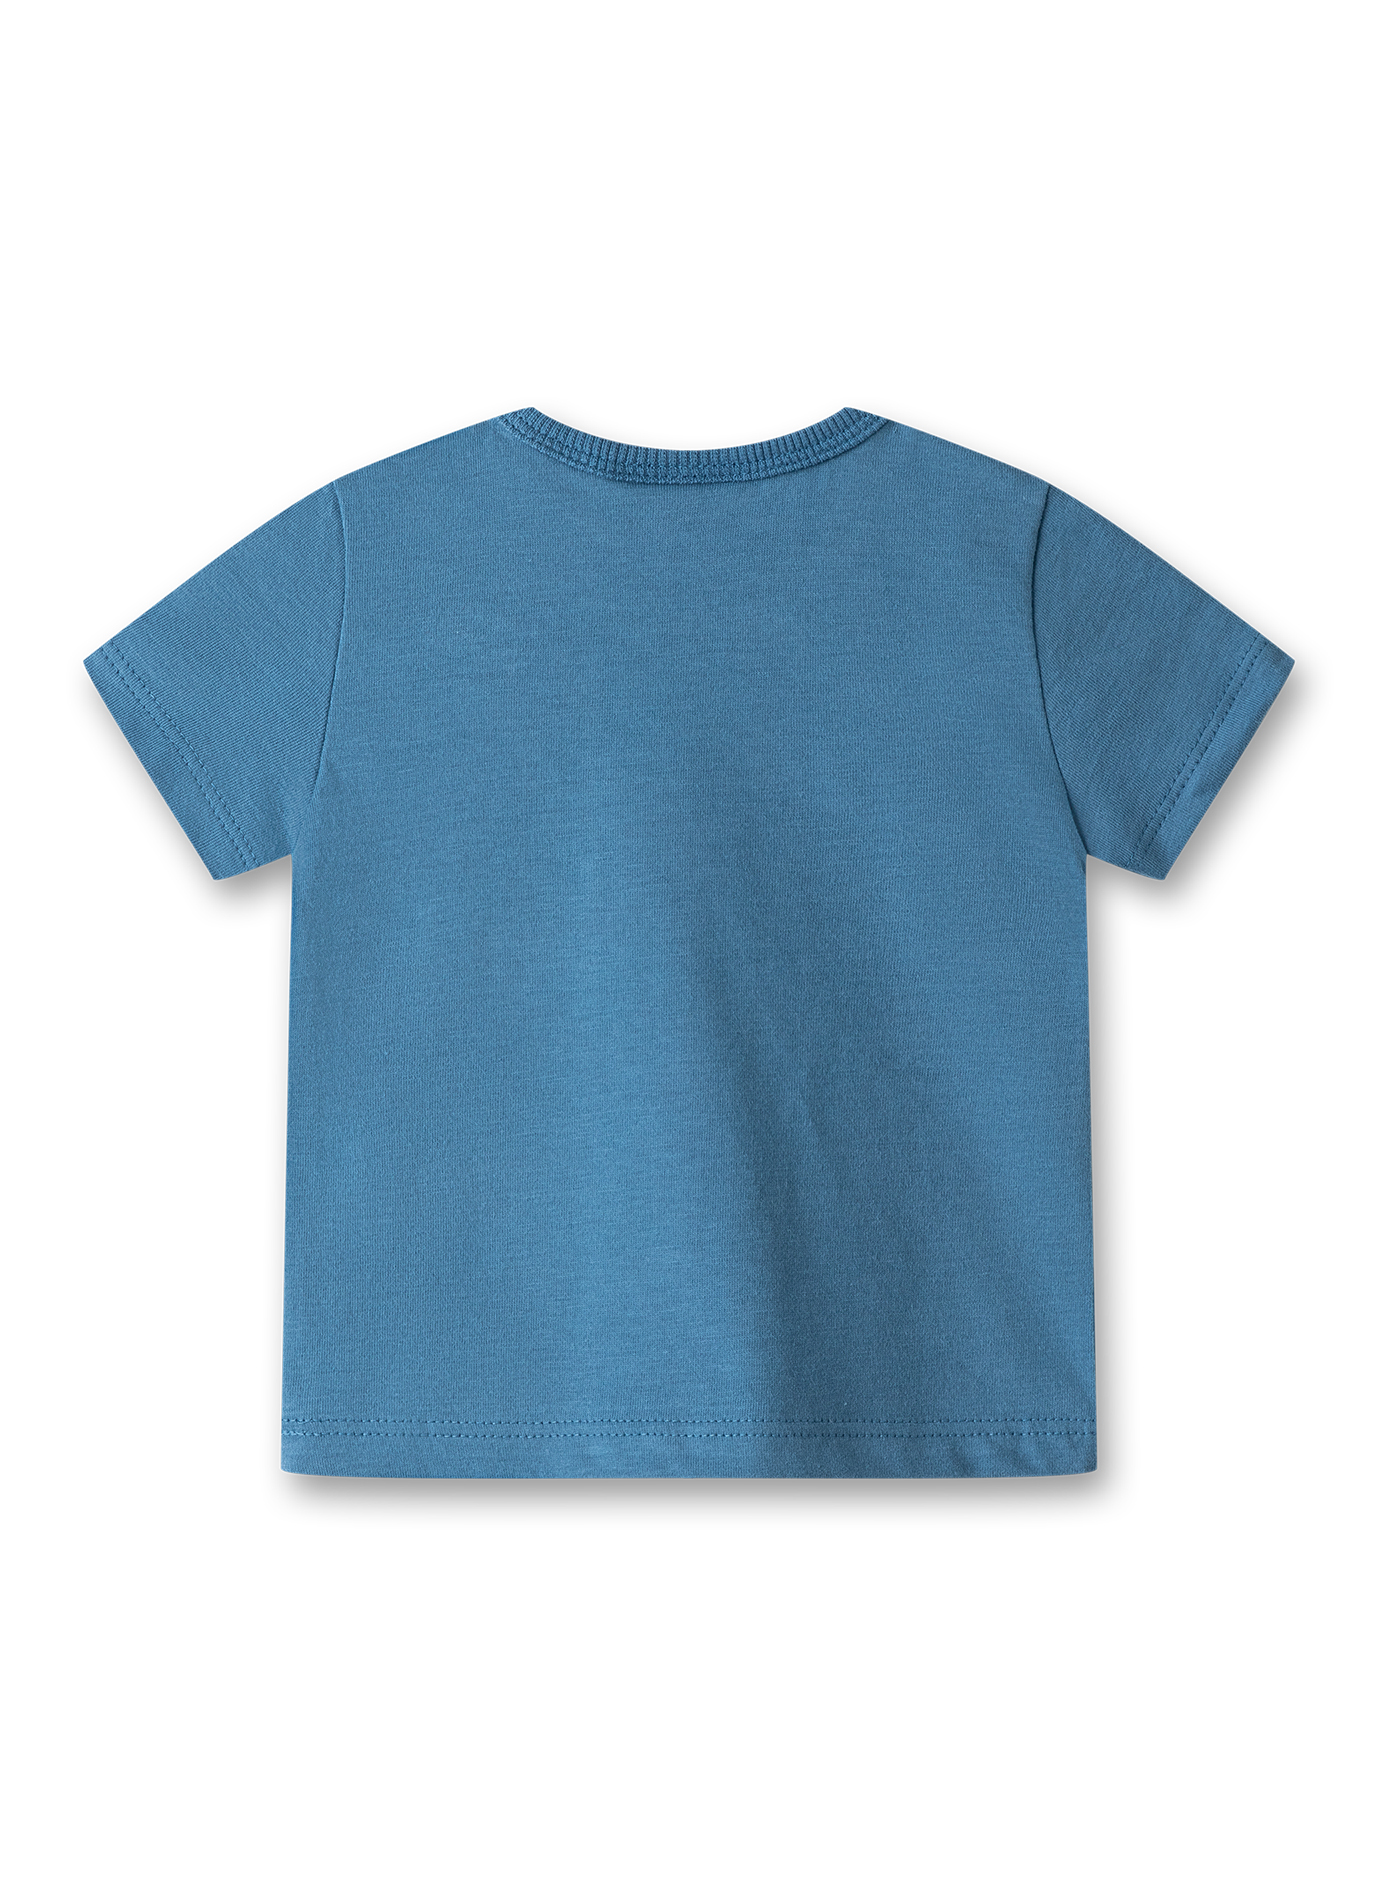 Jungen T-Shirt Blau